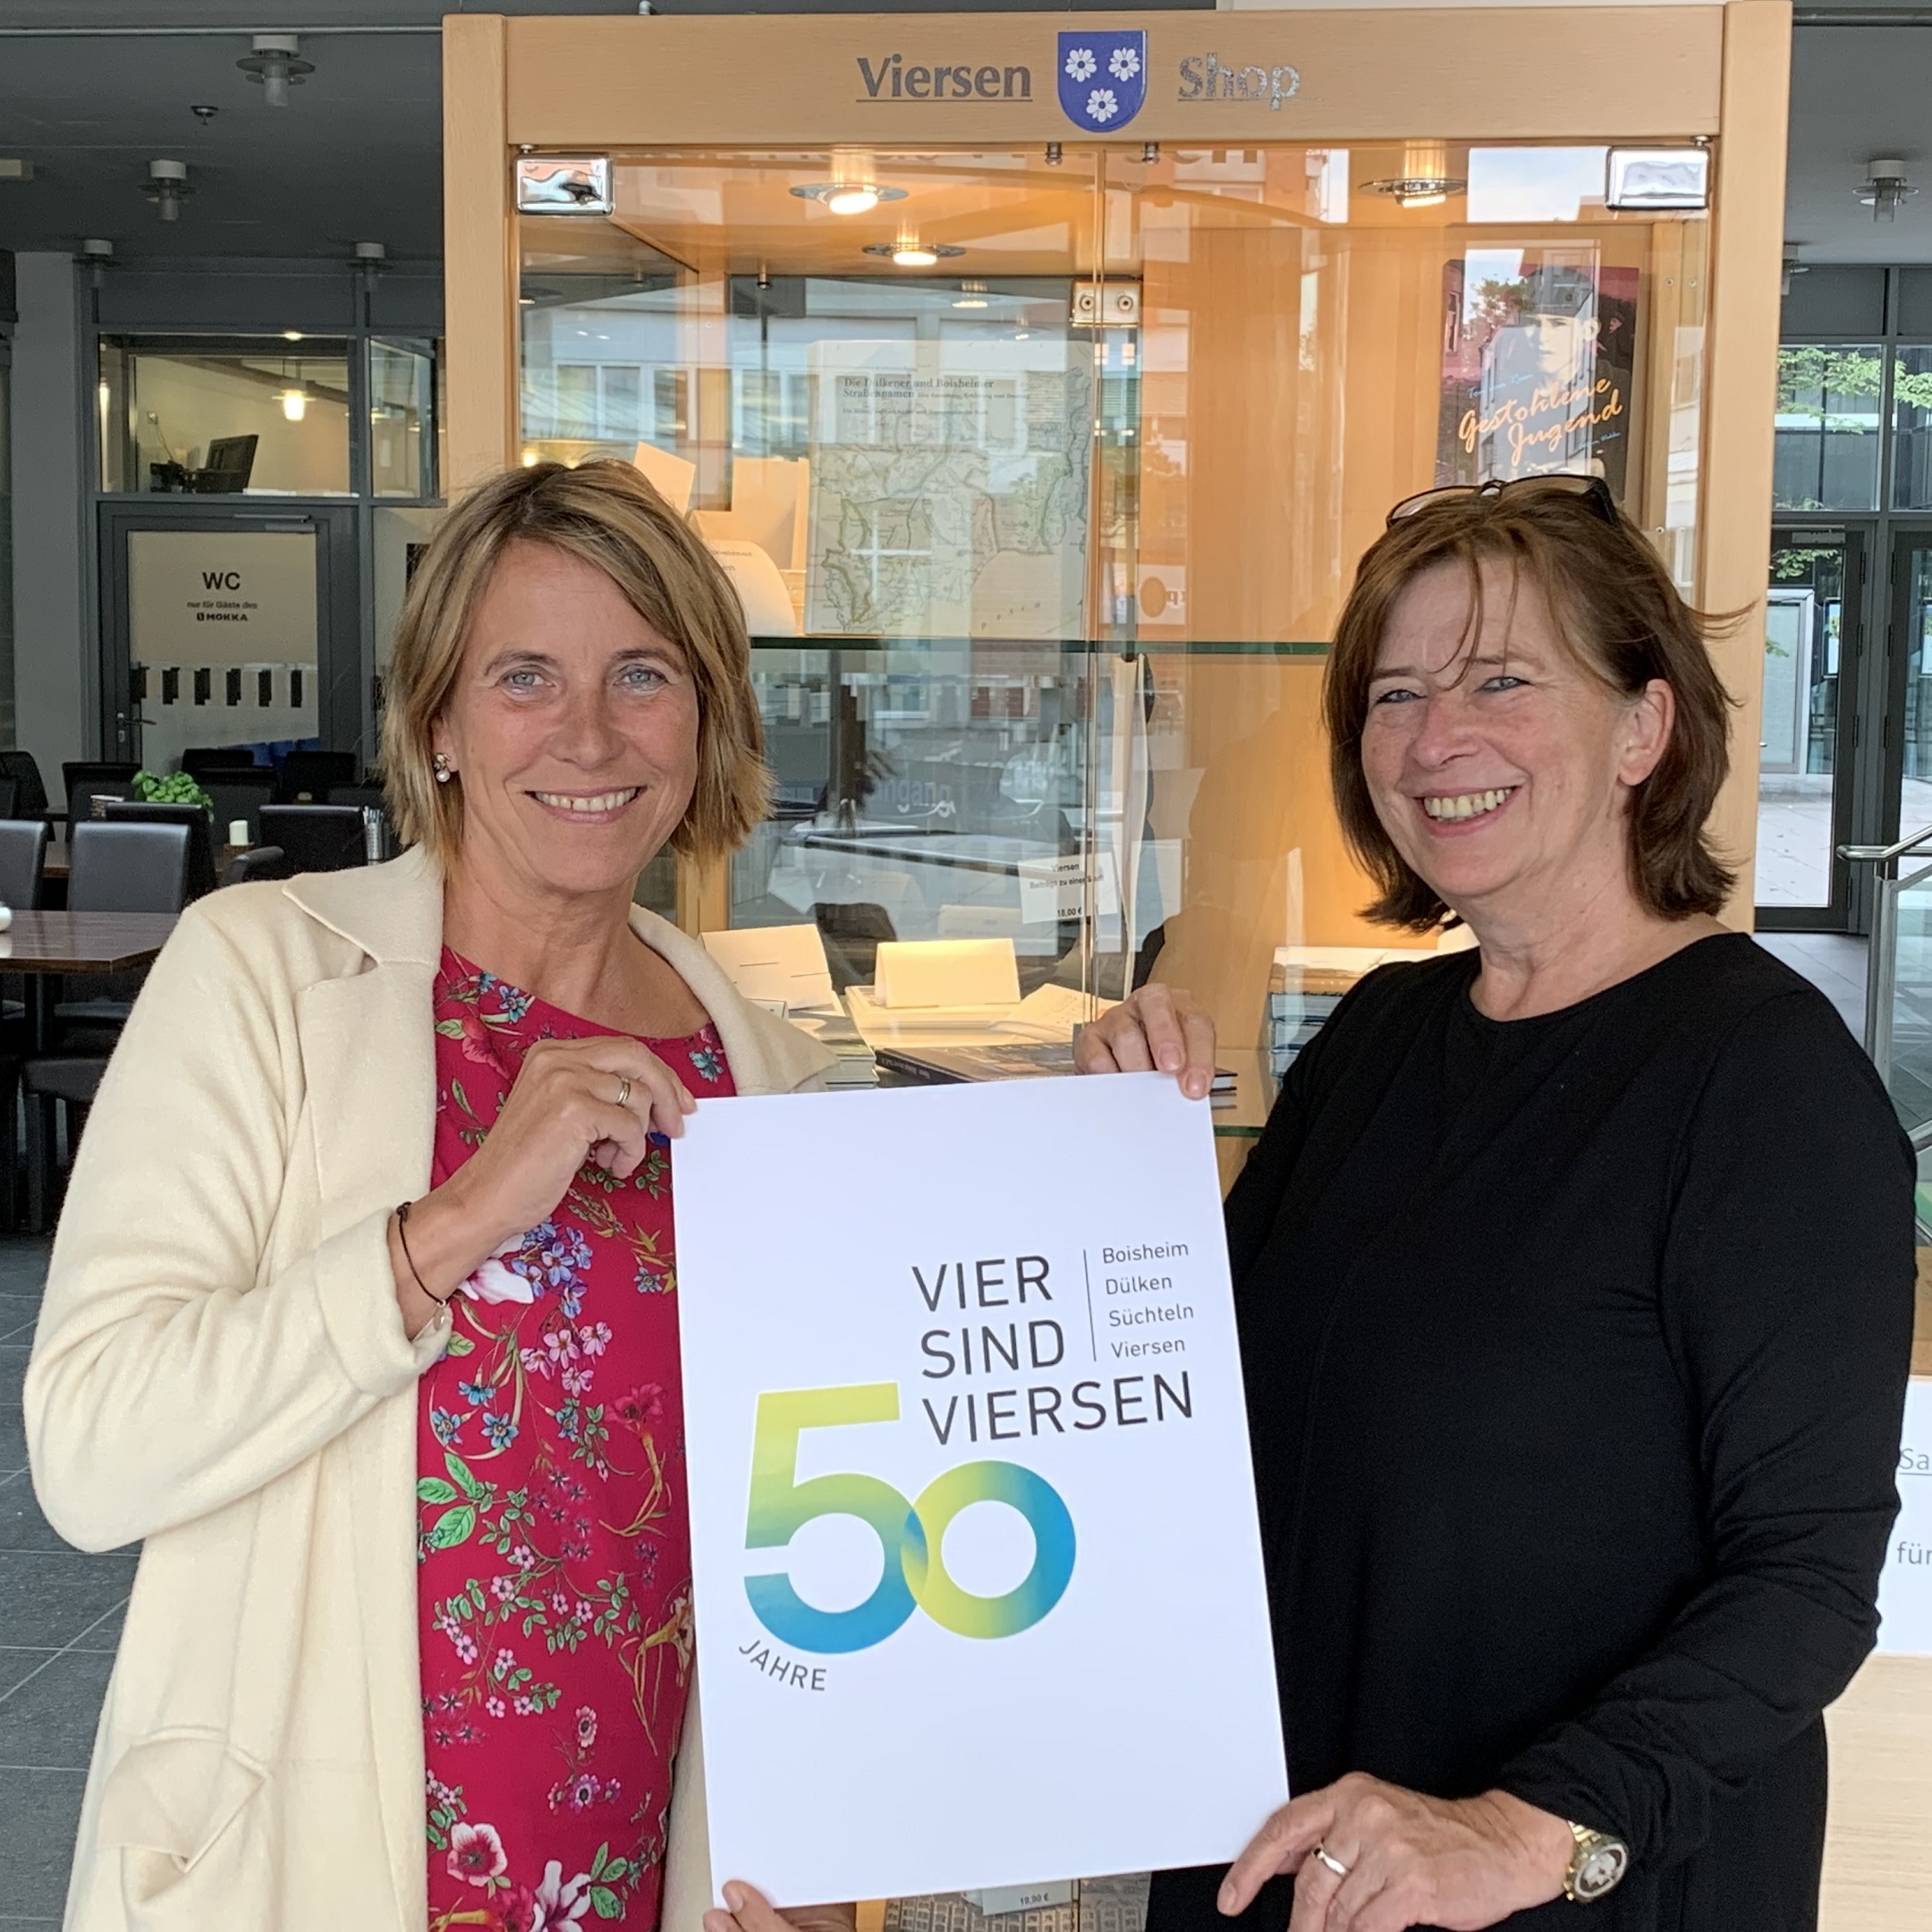 Bürgermeisterin Sabine Anemüller (links) und Ute Feyen mit dem Logo "50 Jahre Stadt Viersen" (Foto: Stadt Viersen)